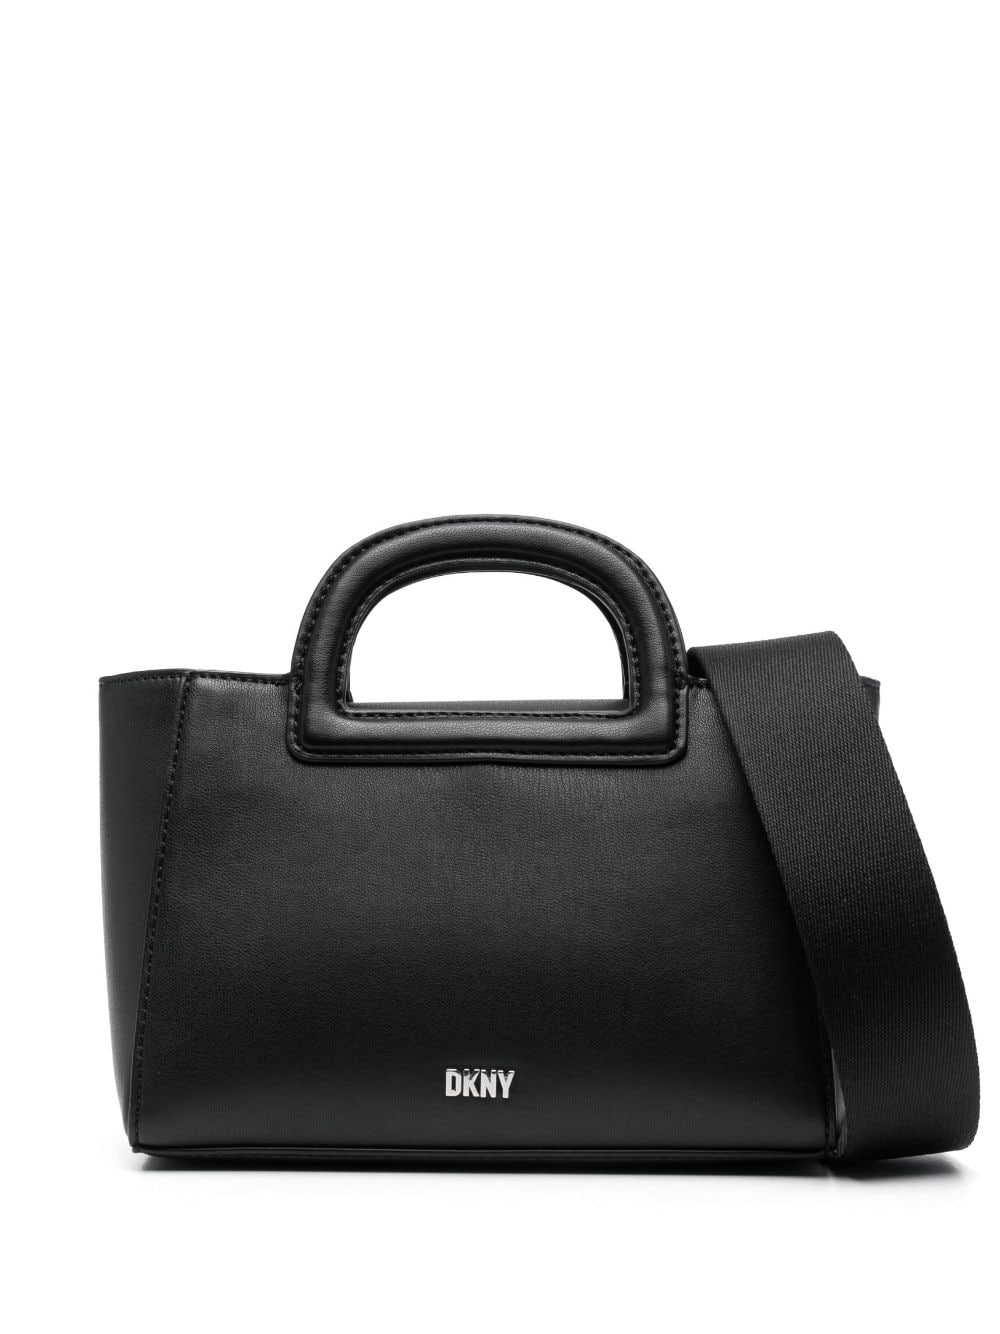 DKNY CLARA MEDIUM SATCHEL  Leather satchel bag, Satchel, Satchel bags